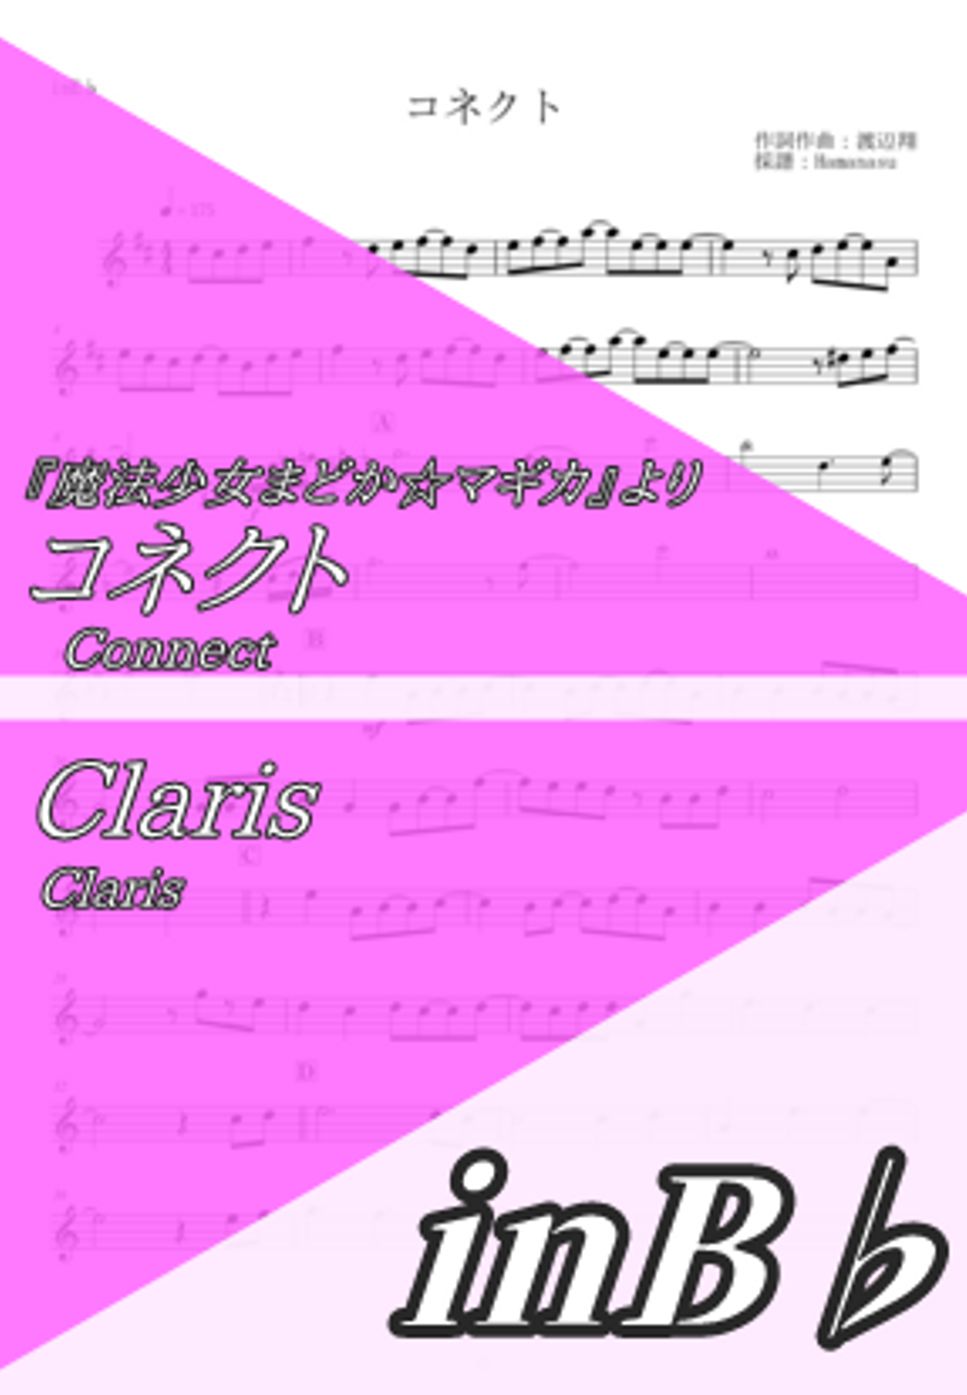 Claris - Connect (inB♭) by Hamanasu